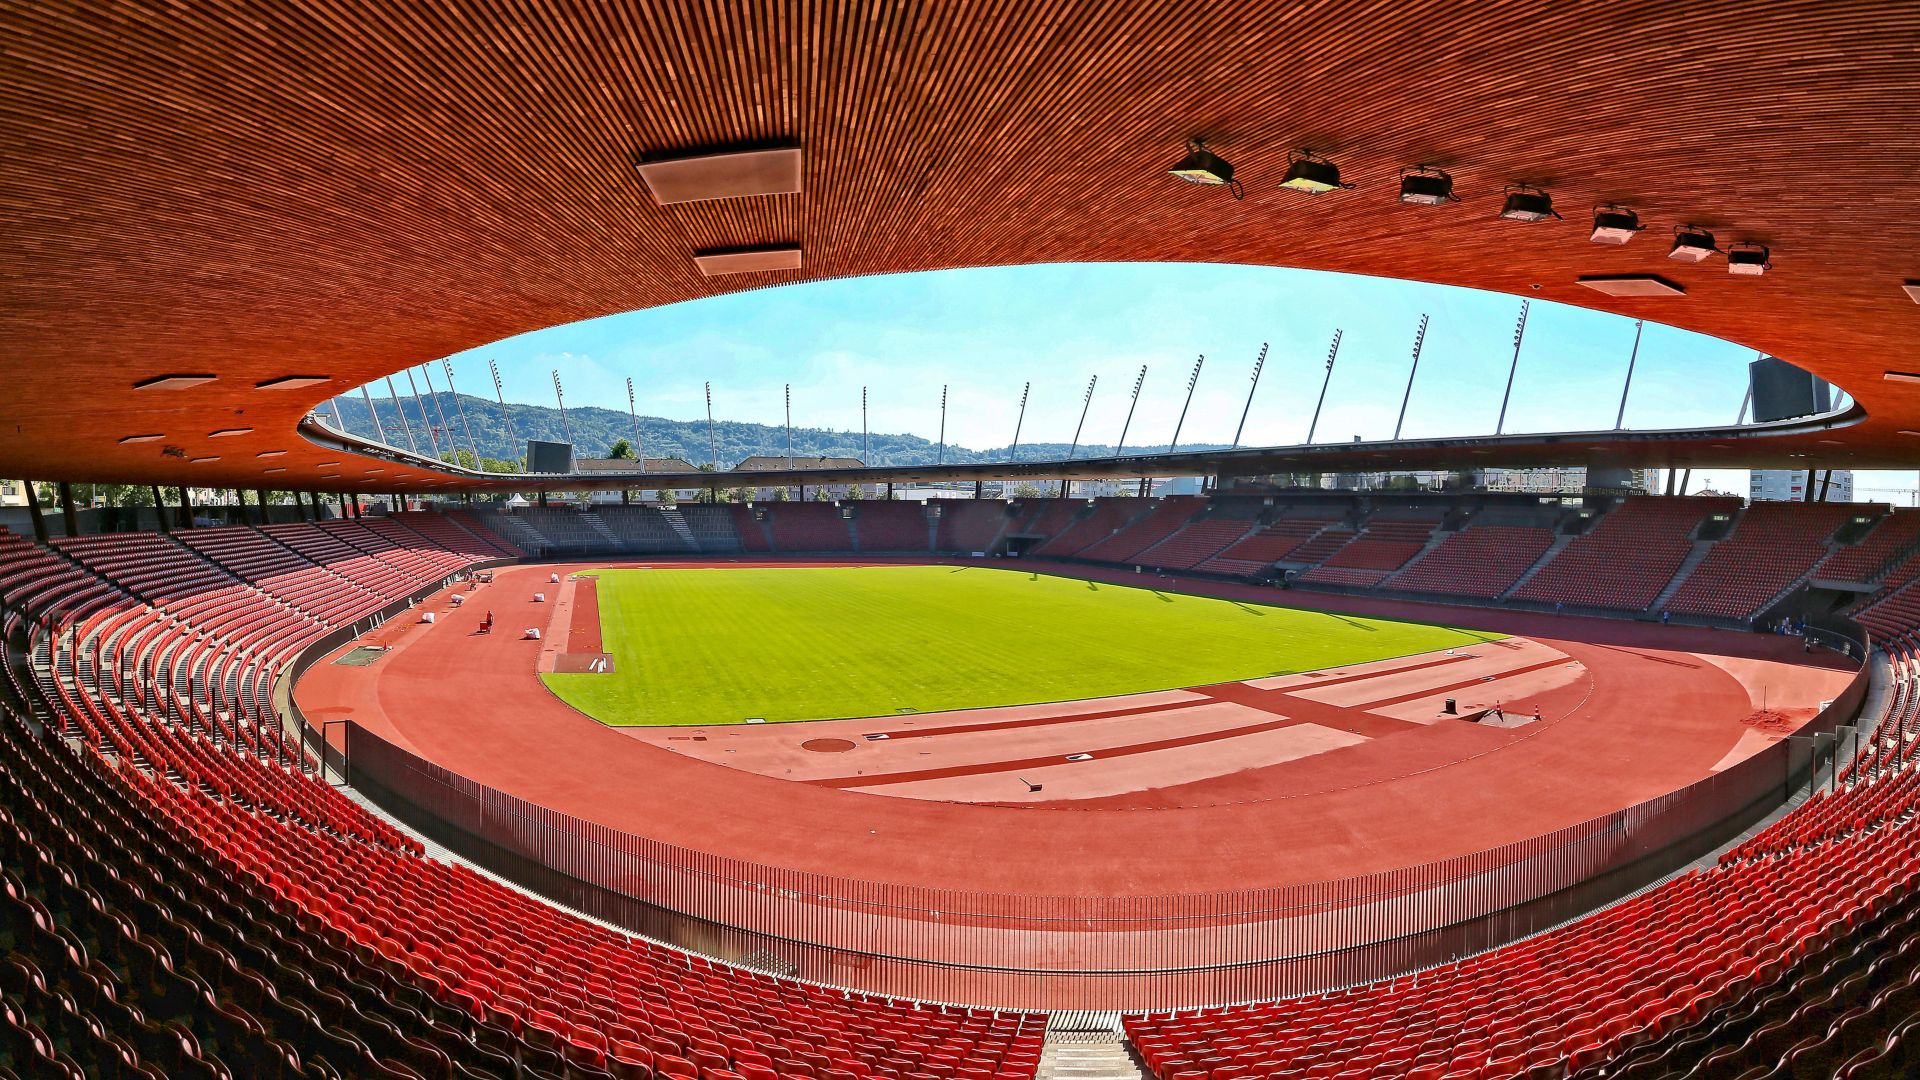 Letzigrund Stadium in Zurich Switzerland corrosion resistance roof 